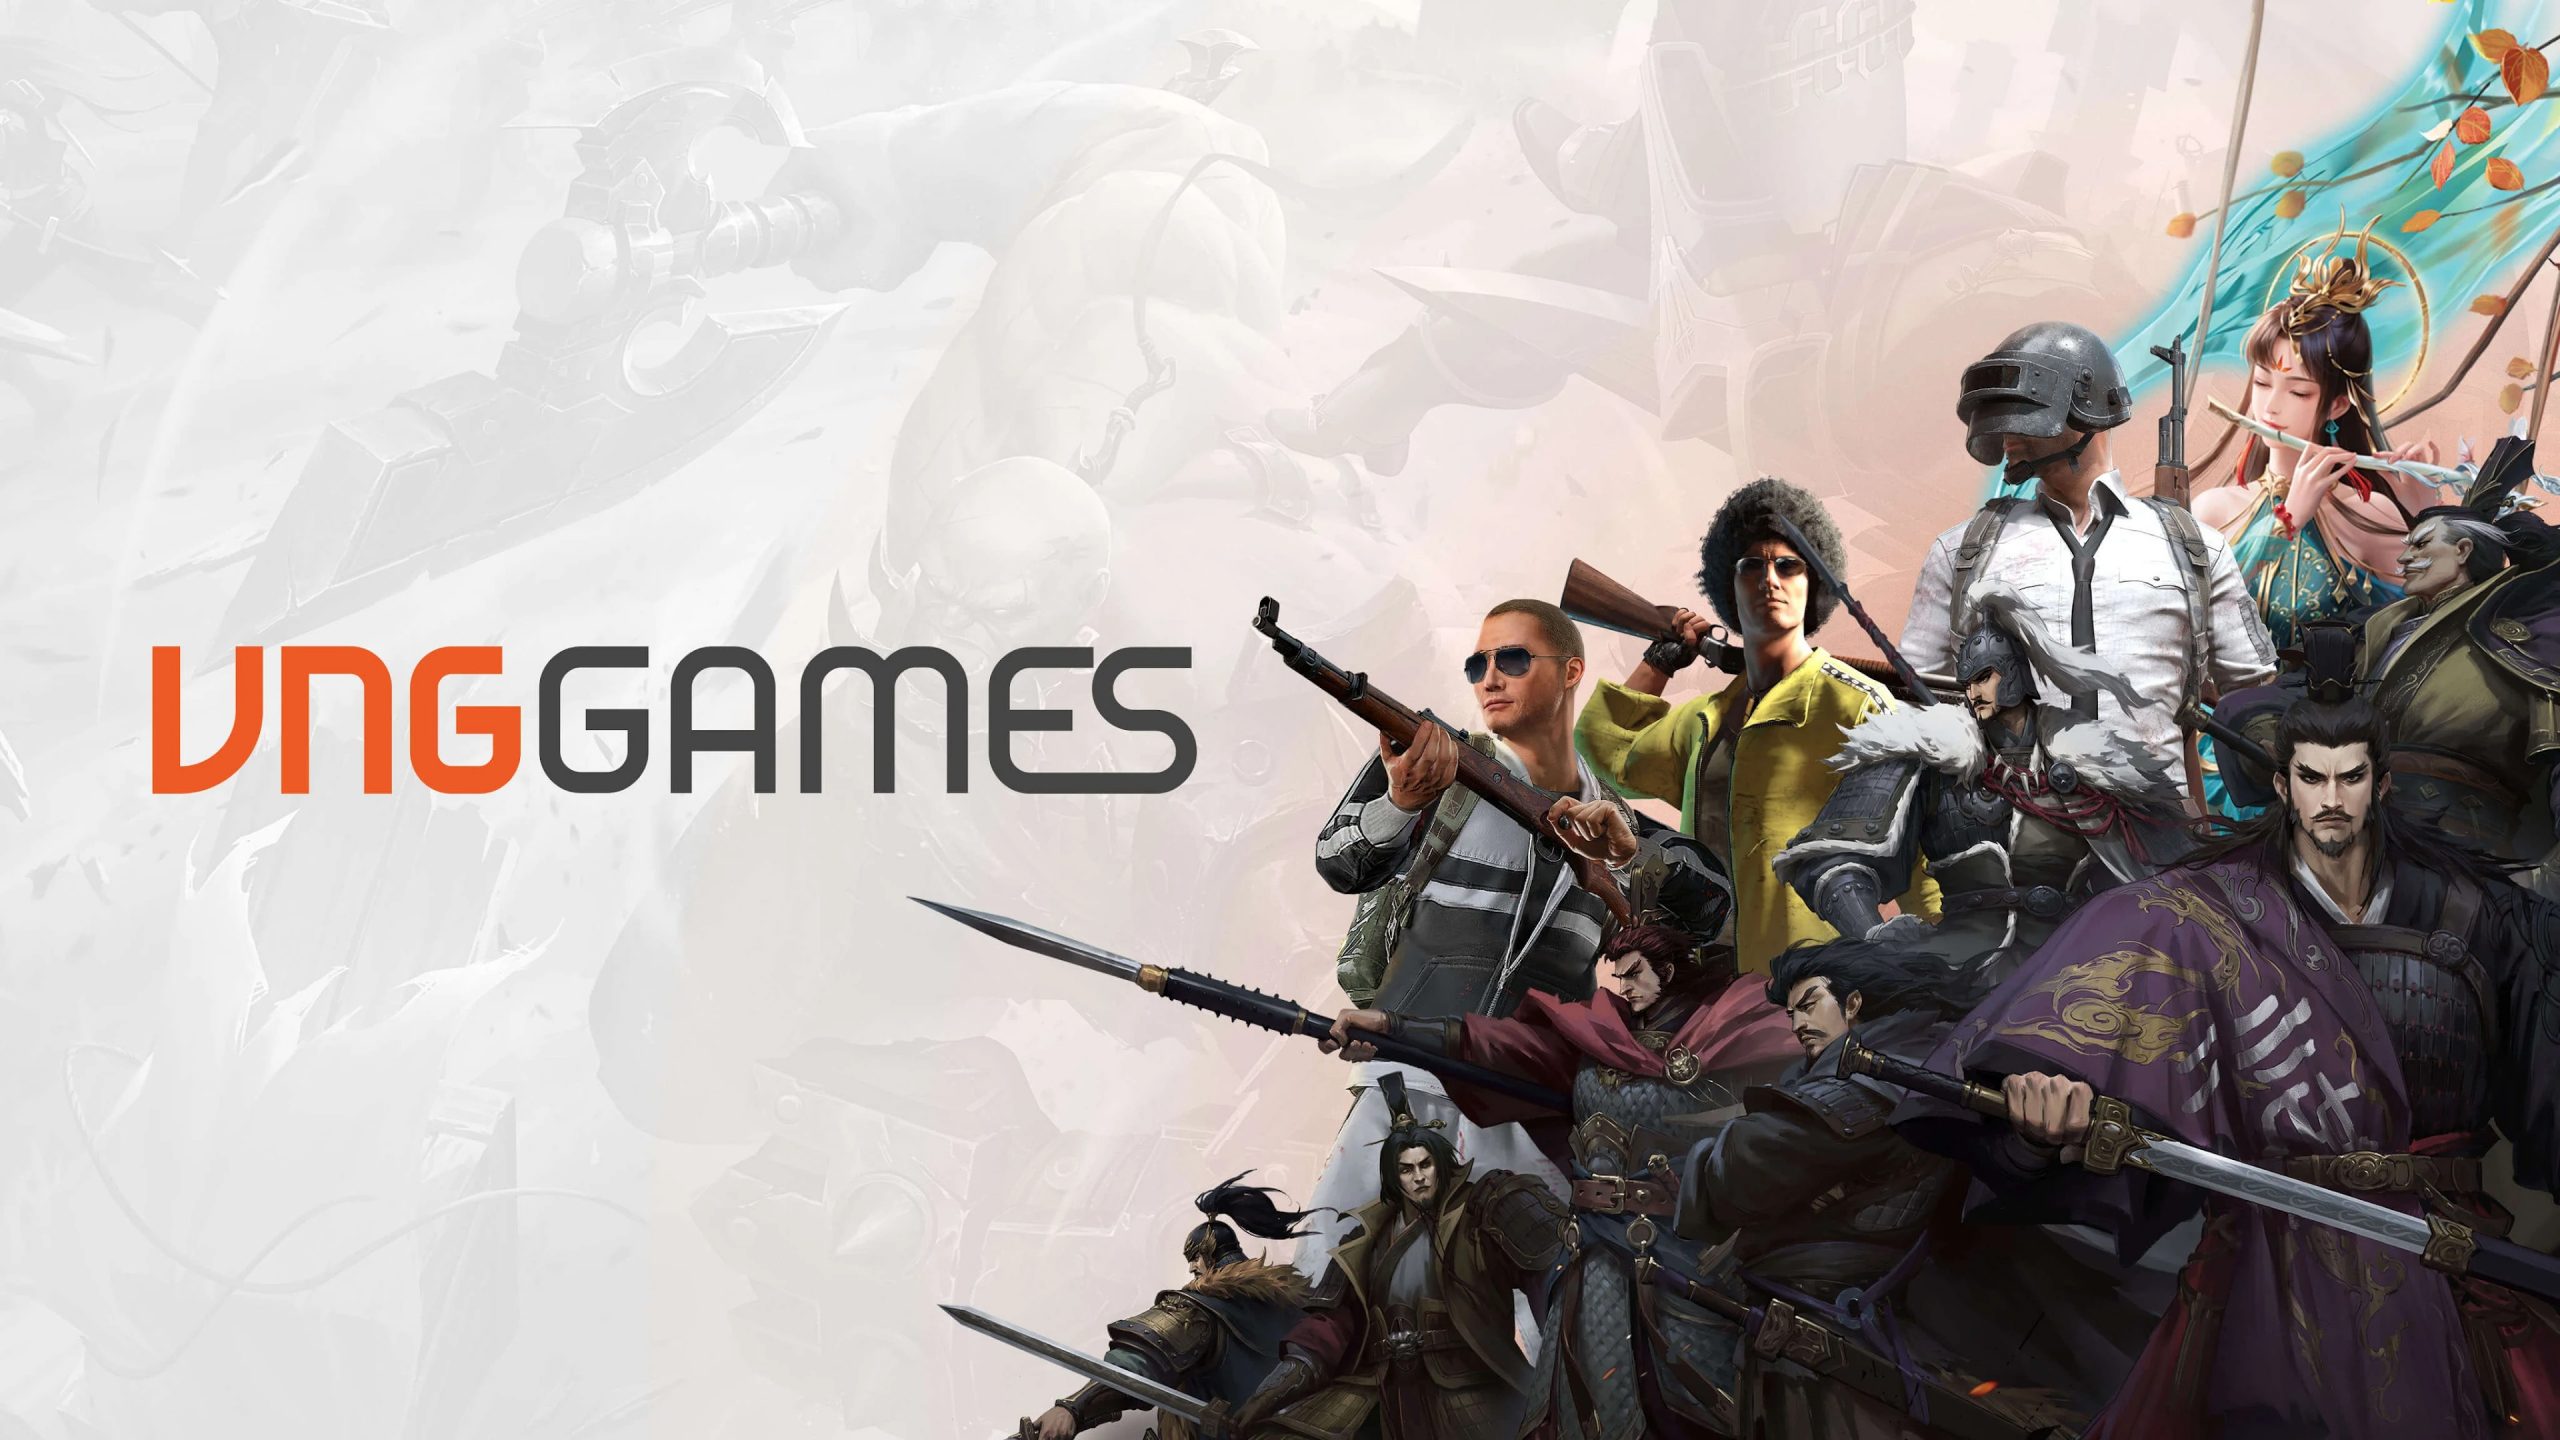 VNGGames ra mắt nhiều sản phẩm mới, khai trương Game Studio Đài Bắc